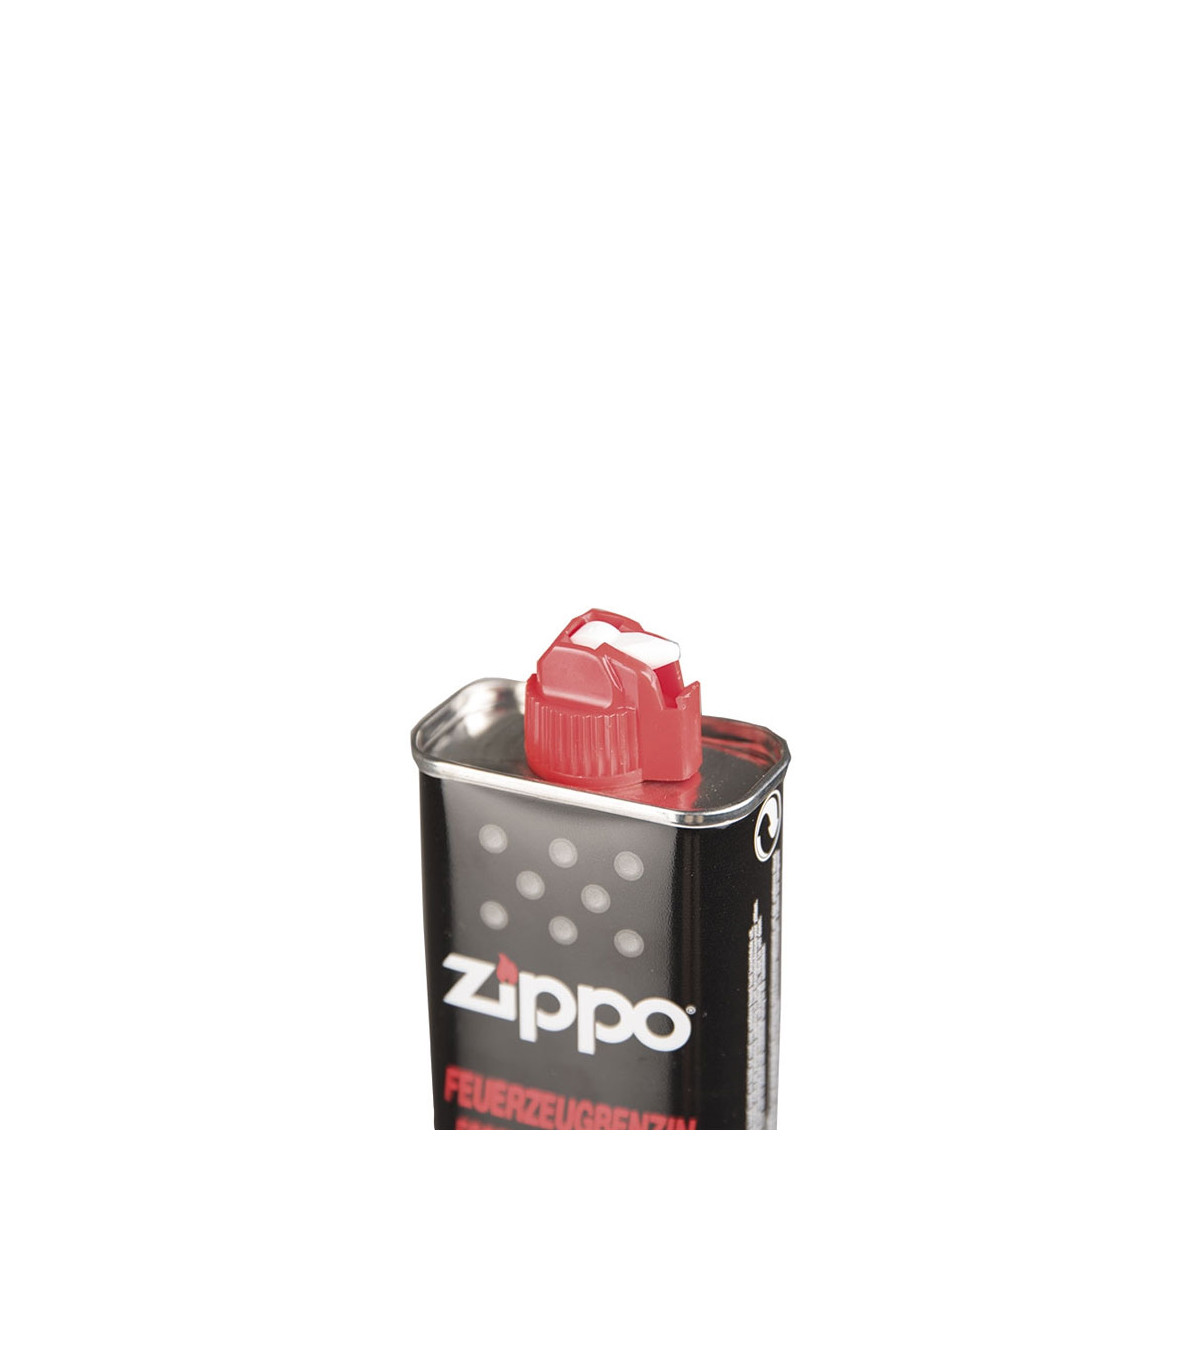 Flacon de 125 ml d'essence ZIPPO pour briquets et chaufferettes de poche